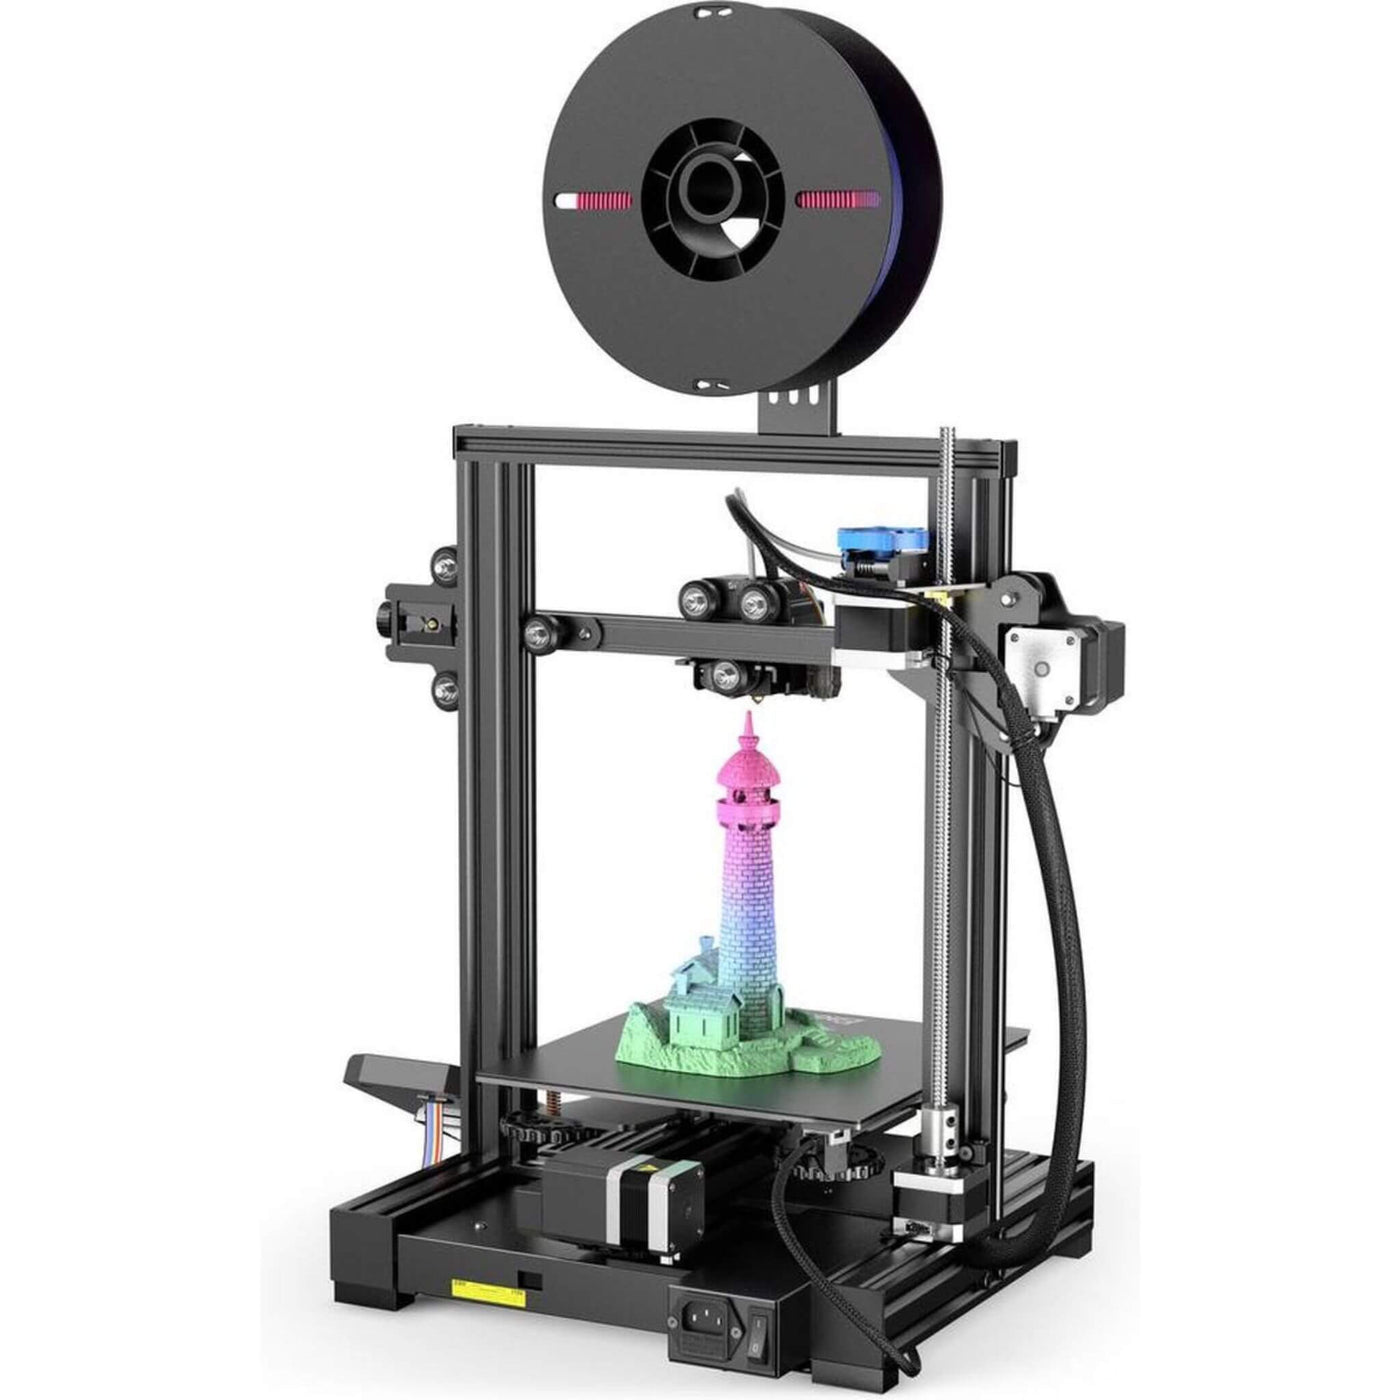 Creality Ender 3 V2 - Neo - 3D Printer